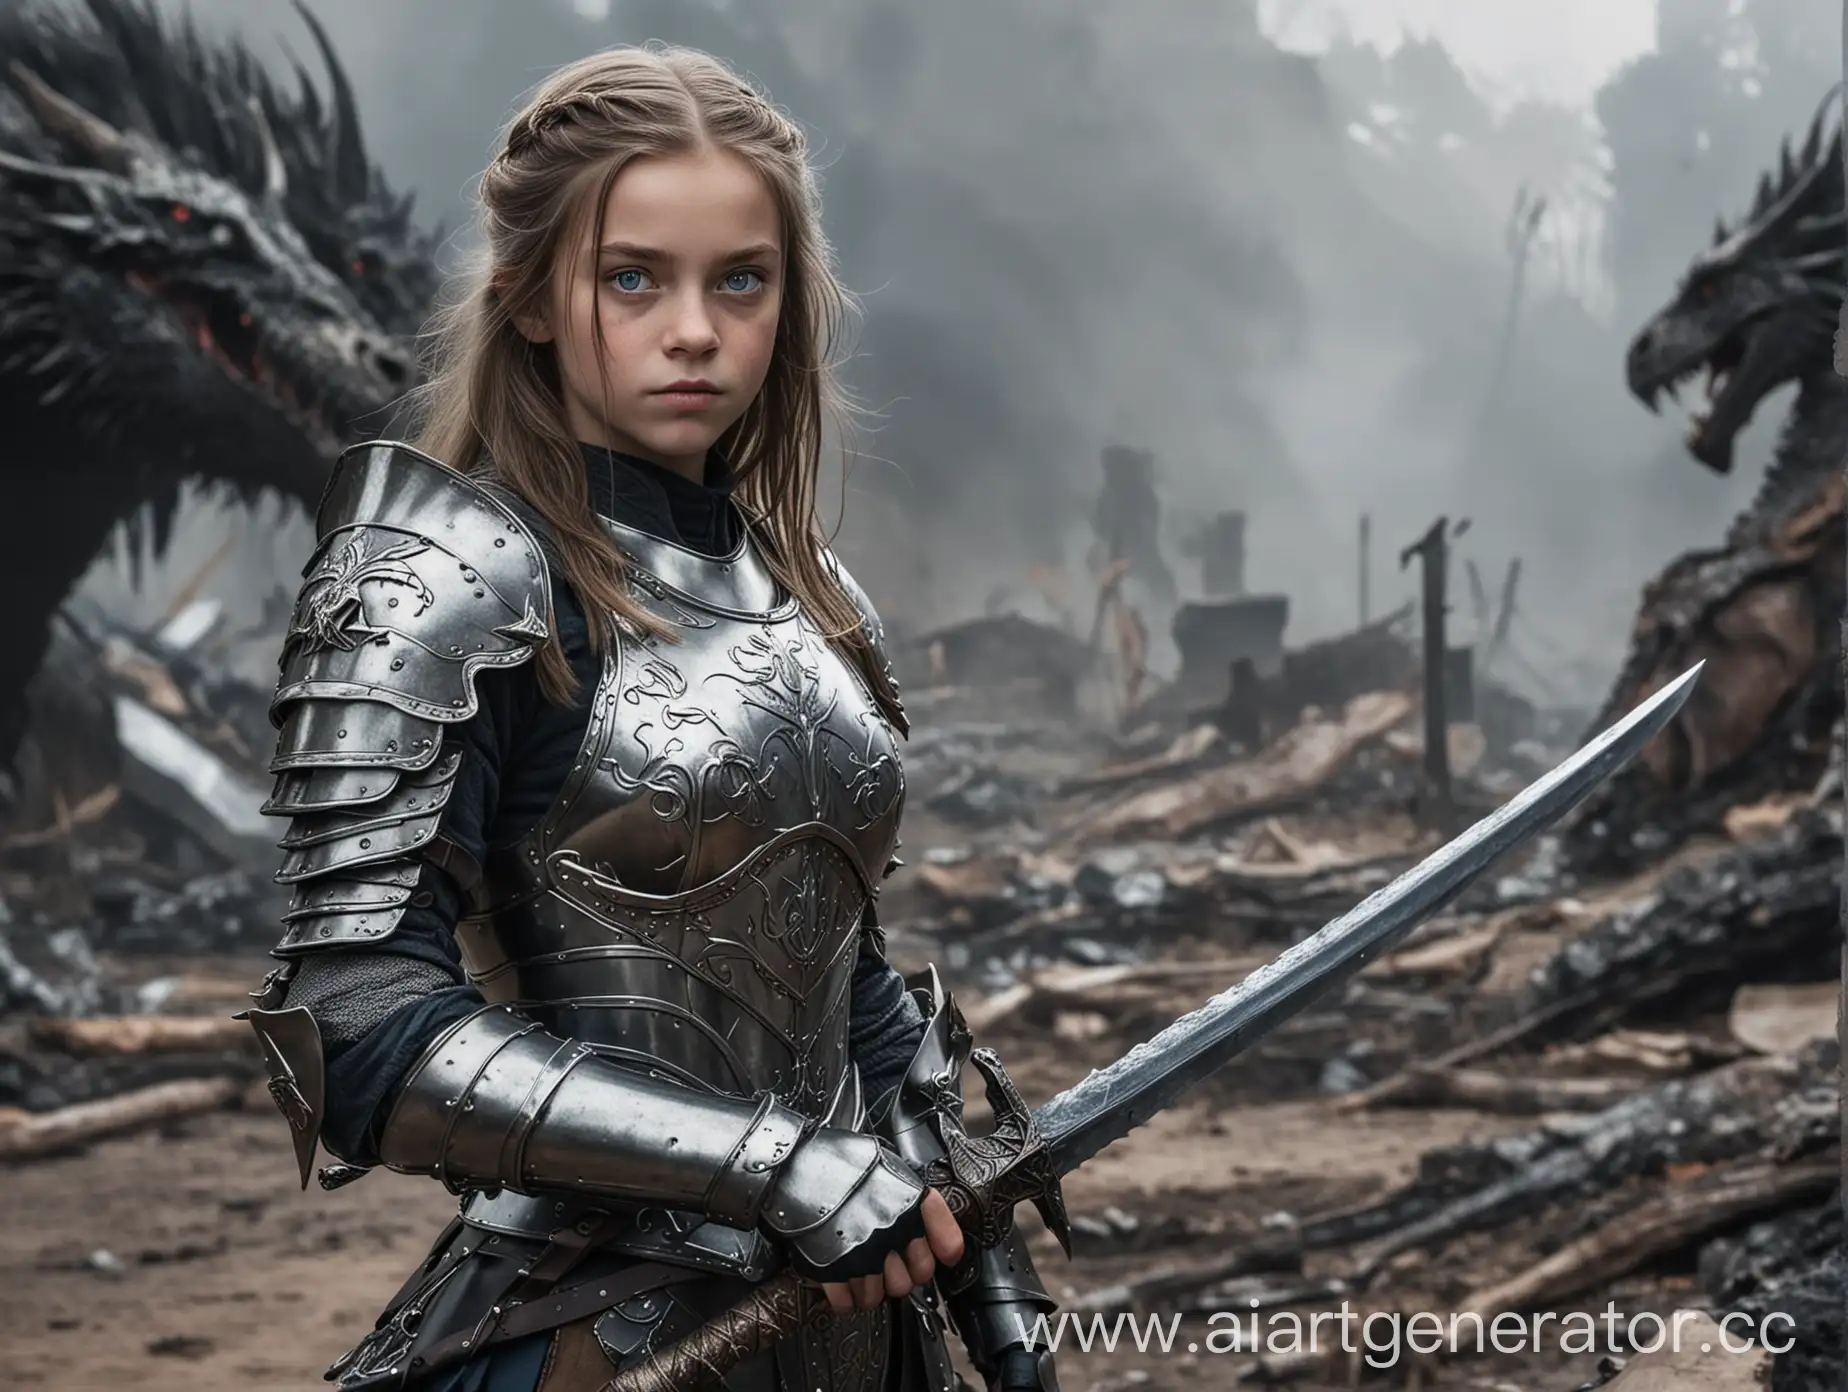 Молодая девушка, средней длины волосы, голубые глаза, в доспехах, с мечом в руках, на фоне убитый дракон